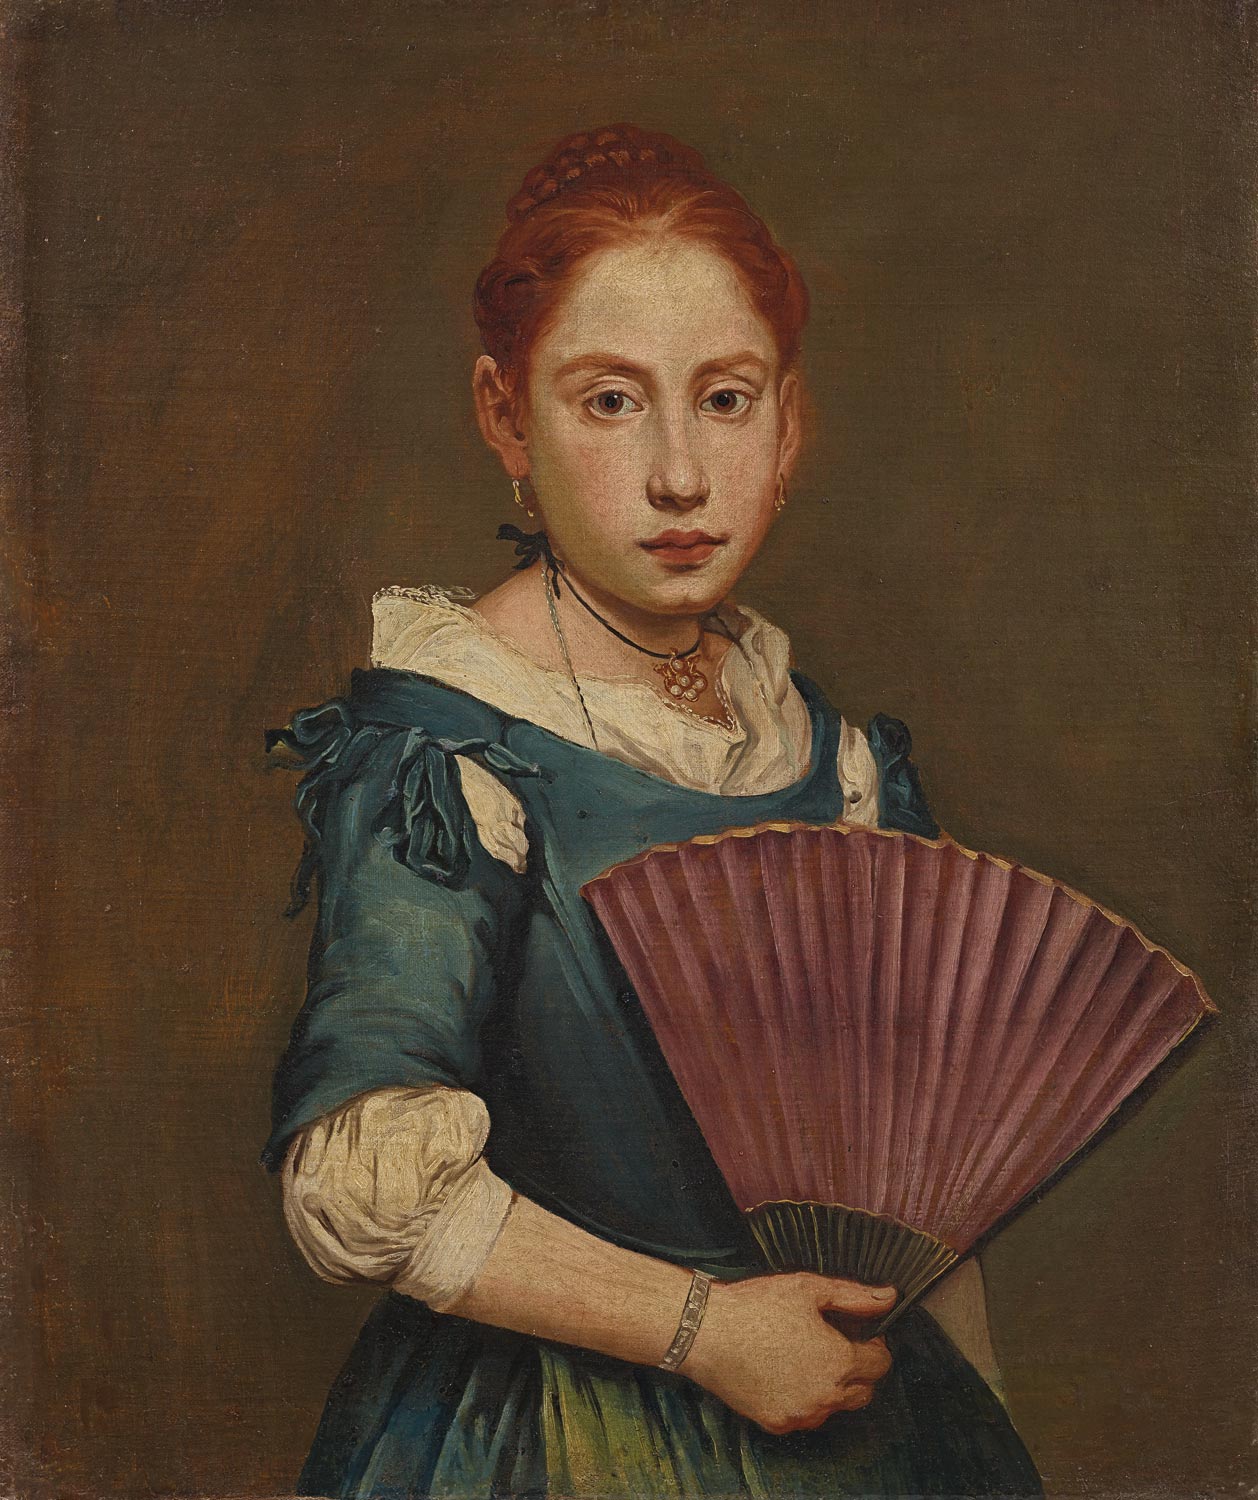 Giacomo Ceruti, Ritratto della giovane con ventaglio (1725-1730 circa; olio su tela, 65,5 × 54,9 cm; Bergamo, Fondazione Accademia Carrara, inv. n. 58 MR 00065)